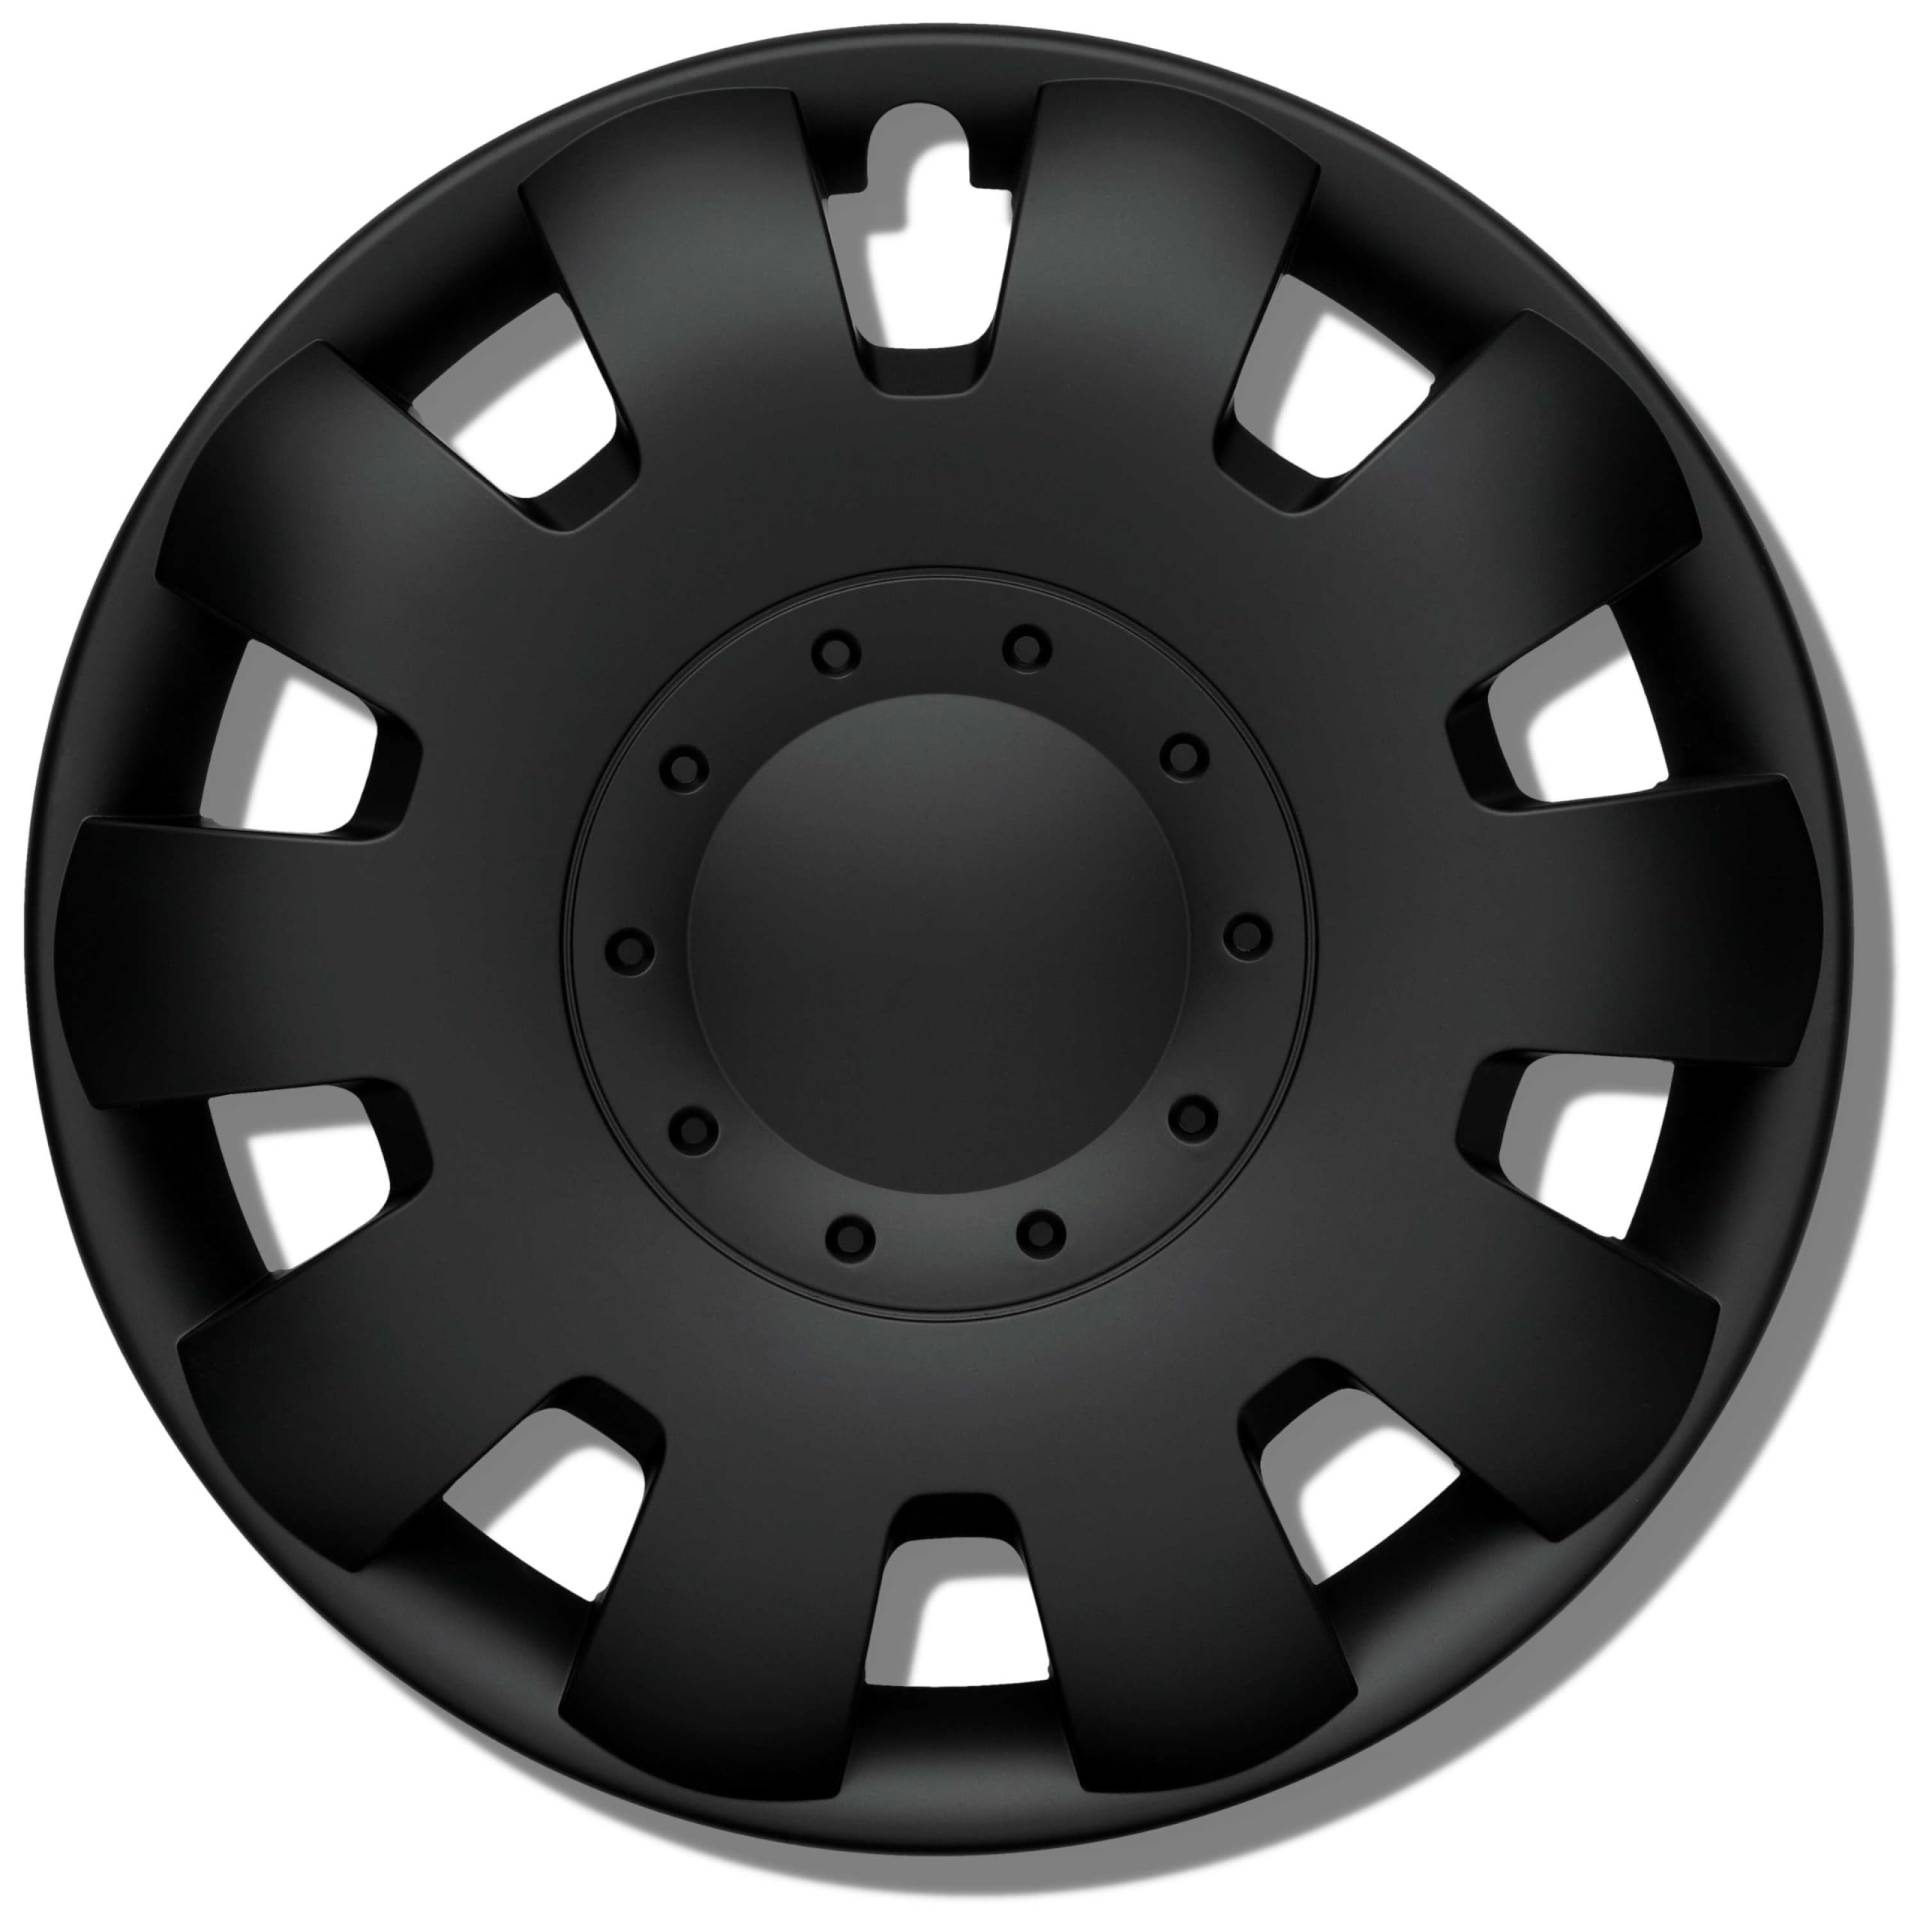 Radkappen 17 Zoll schwarz matt Erstausrüster Qualität aus robustem Kunststoff Neptun 4 Stück Radzierblenden für Stahlräder - Radblenden 4er Set für Stahlfelgen - Europäische Produktion von Kuglo